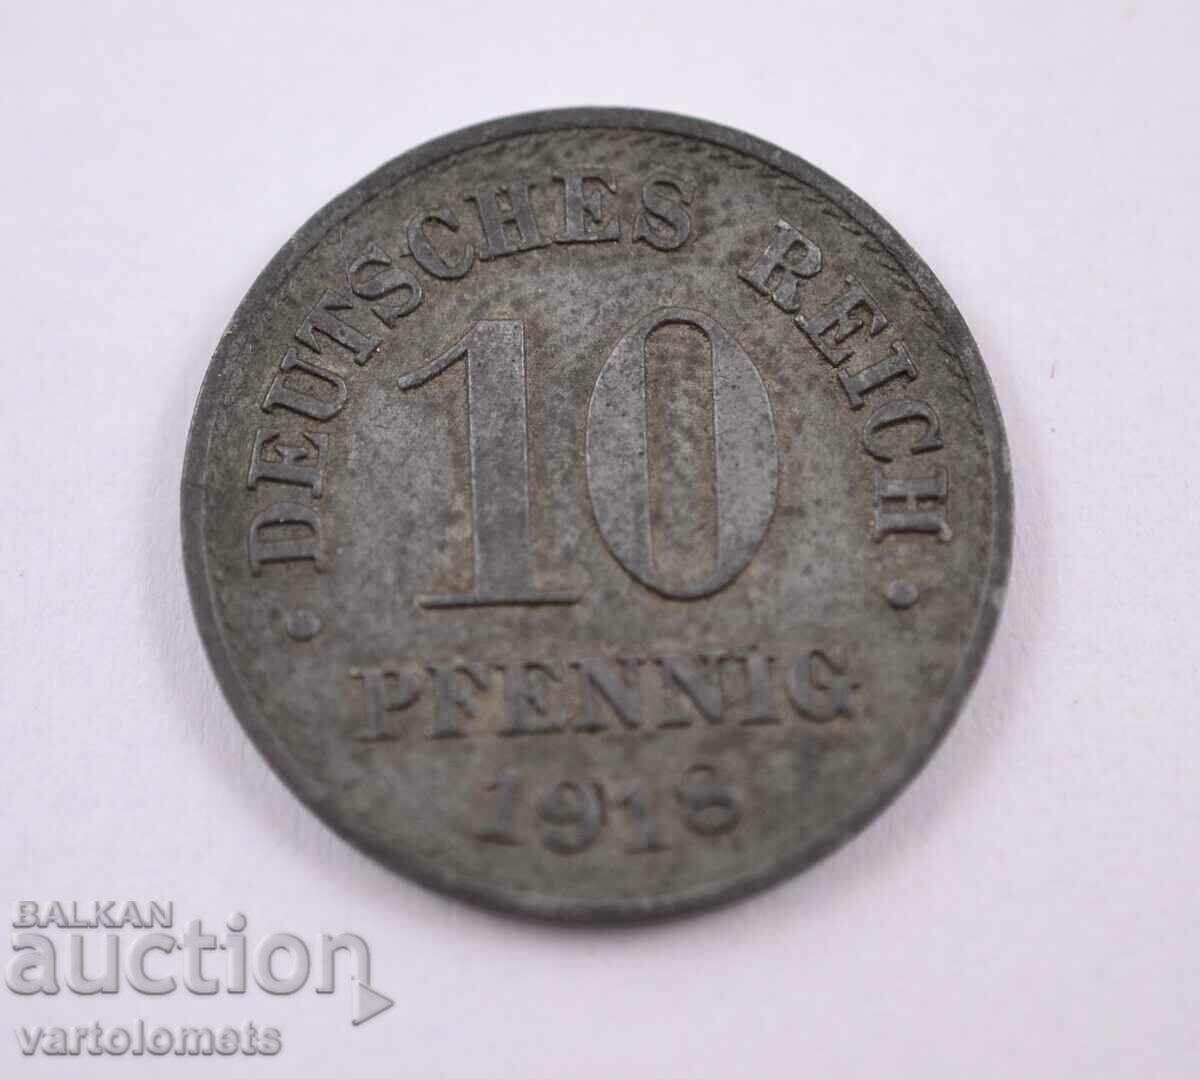 10 Pfennig 1918 - Germany